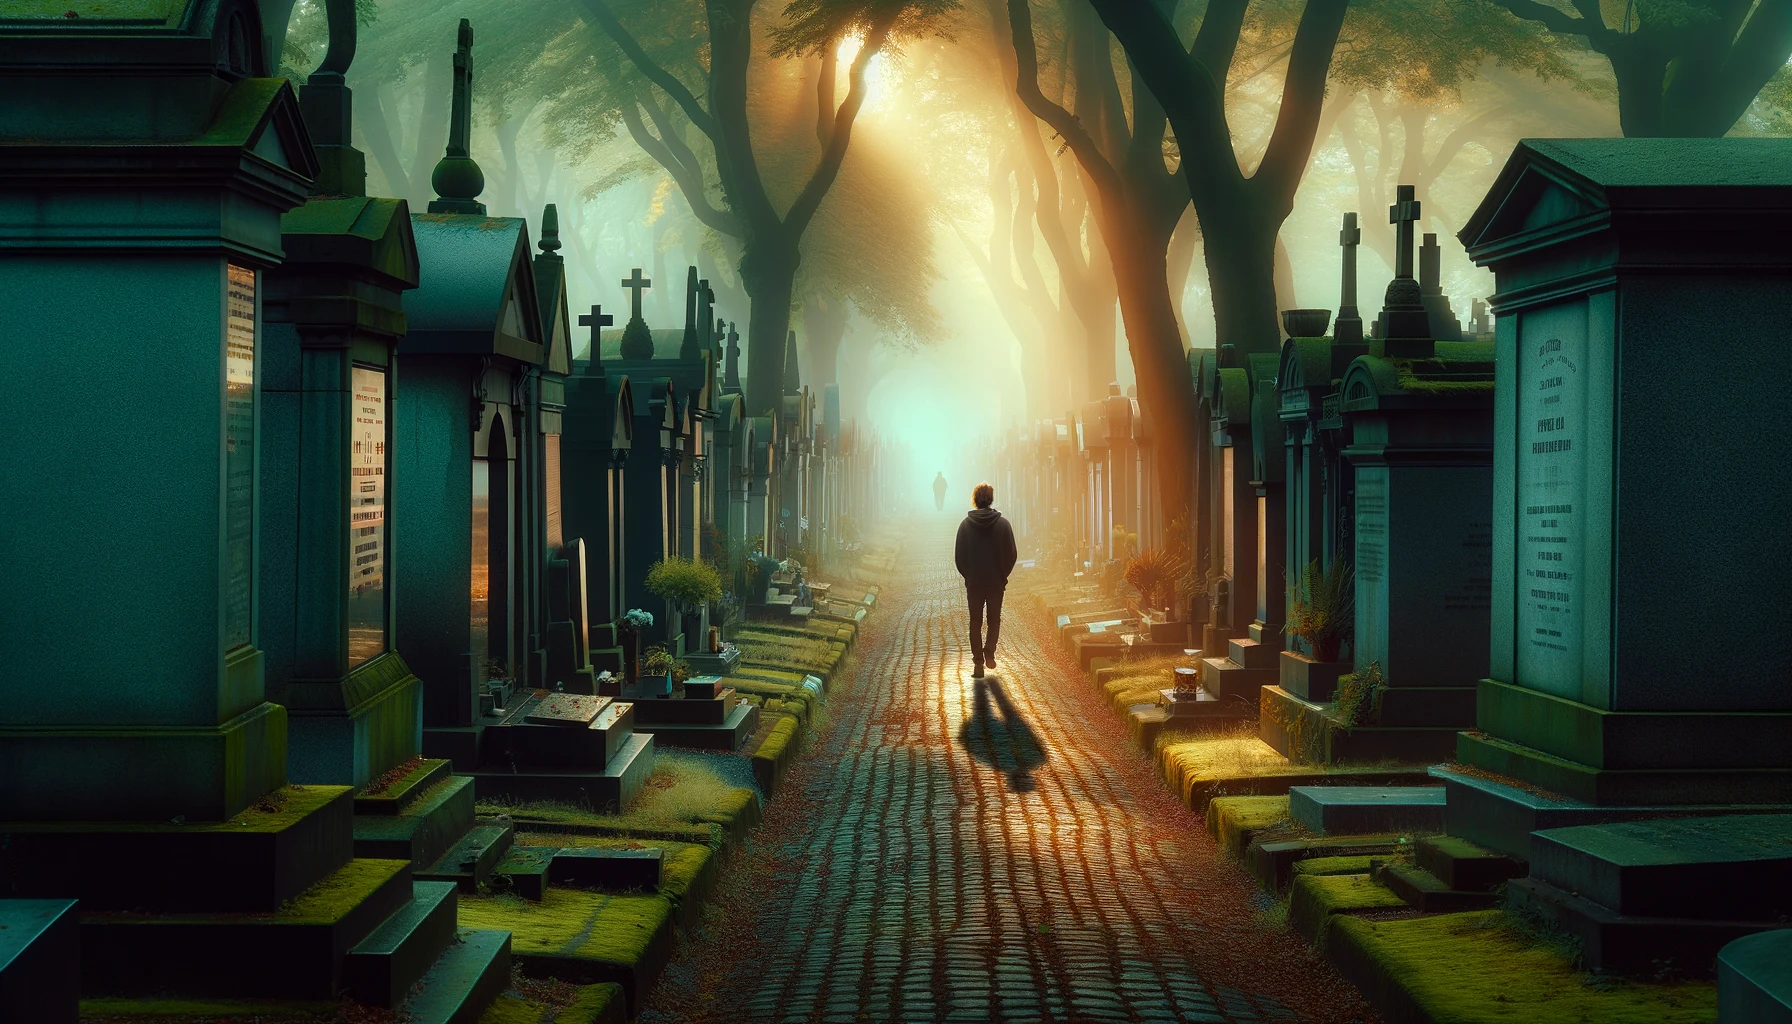 reflexión y calma en un cementerio